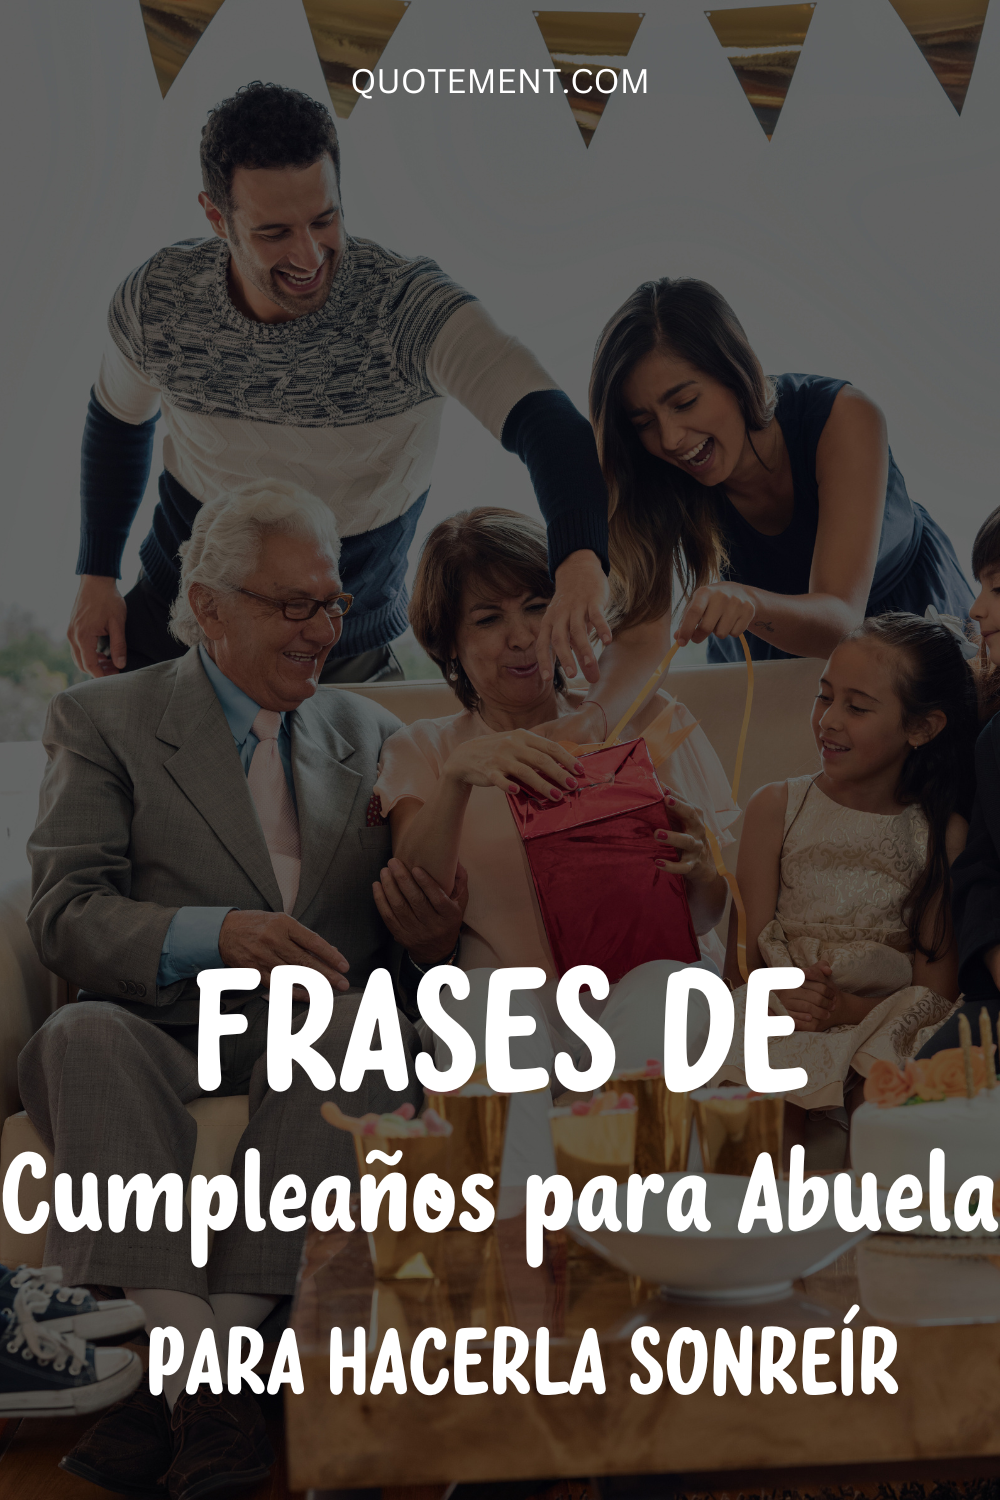 100 frases de cumpleaños para abuelas que harán que su día sea memorable 